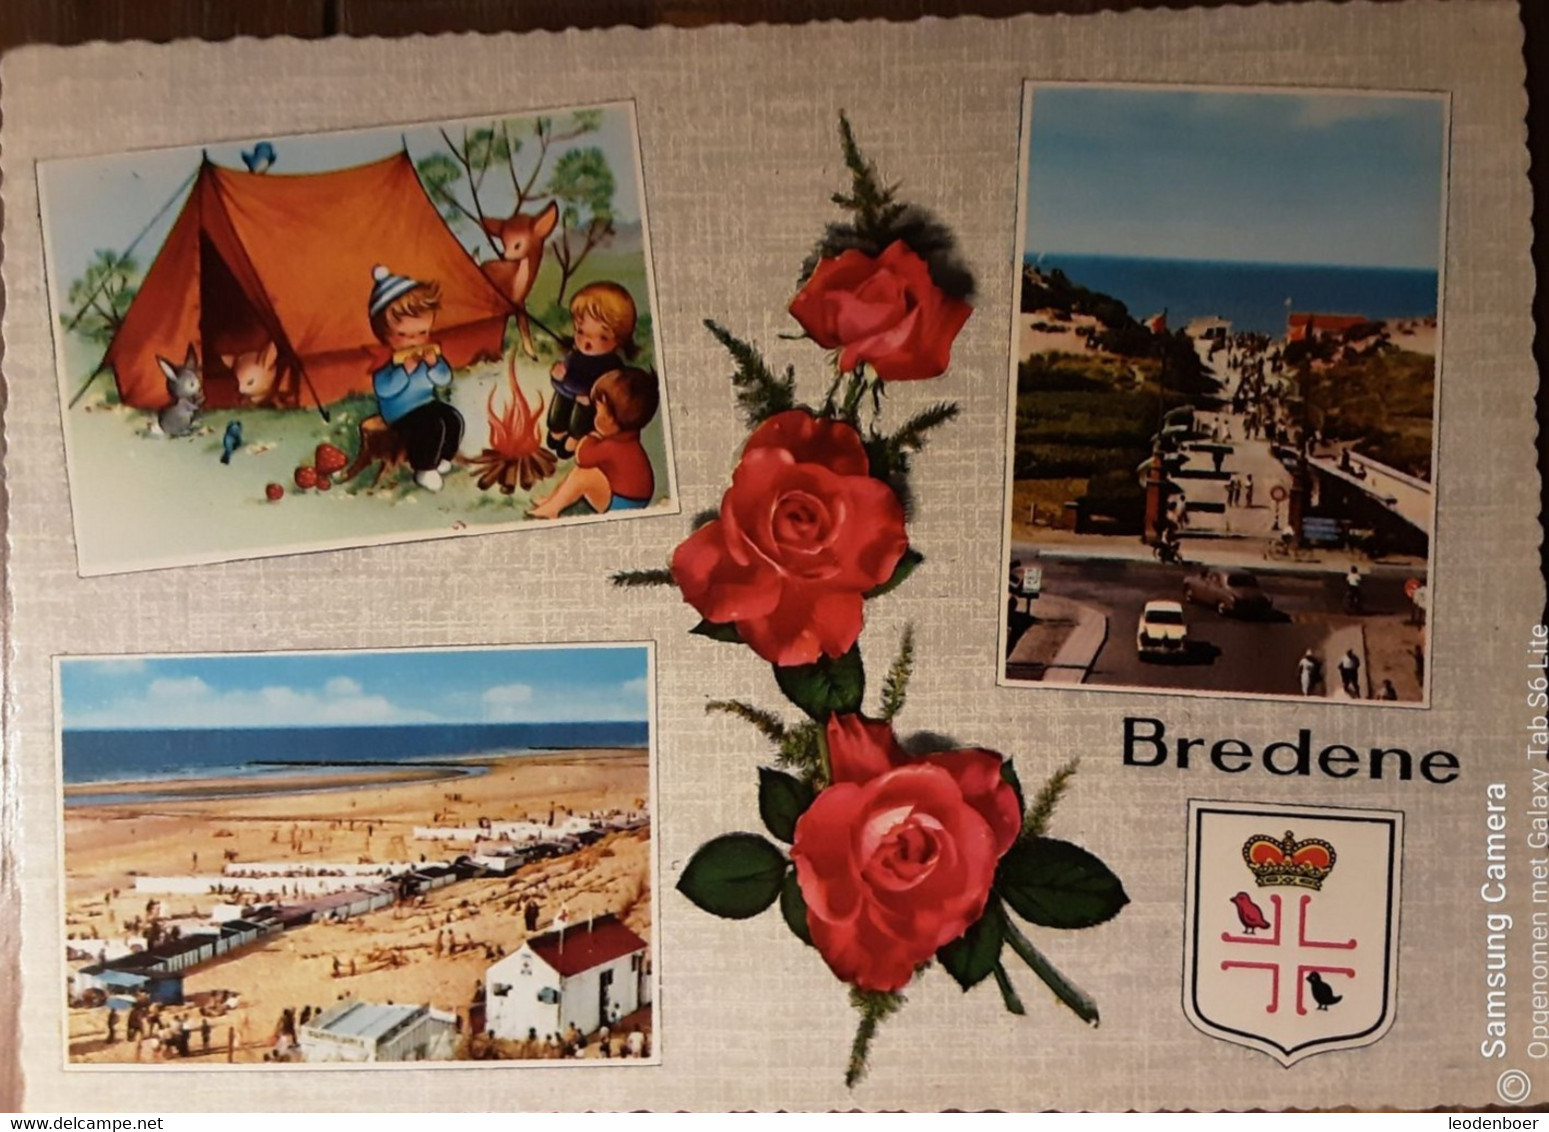 Bredene - 762/20 - Bredene